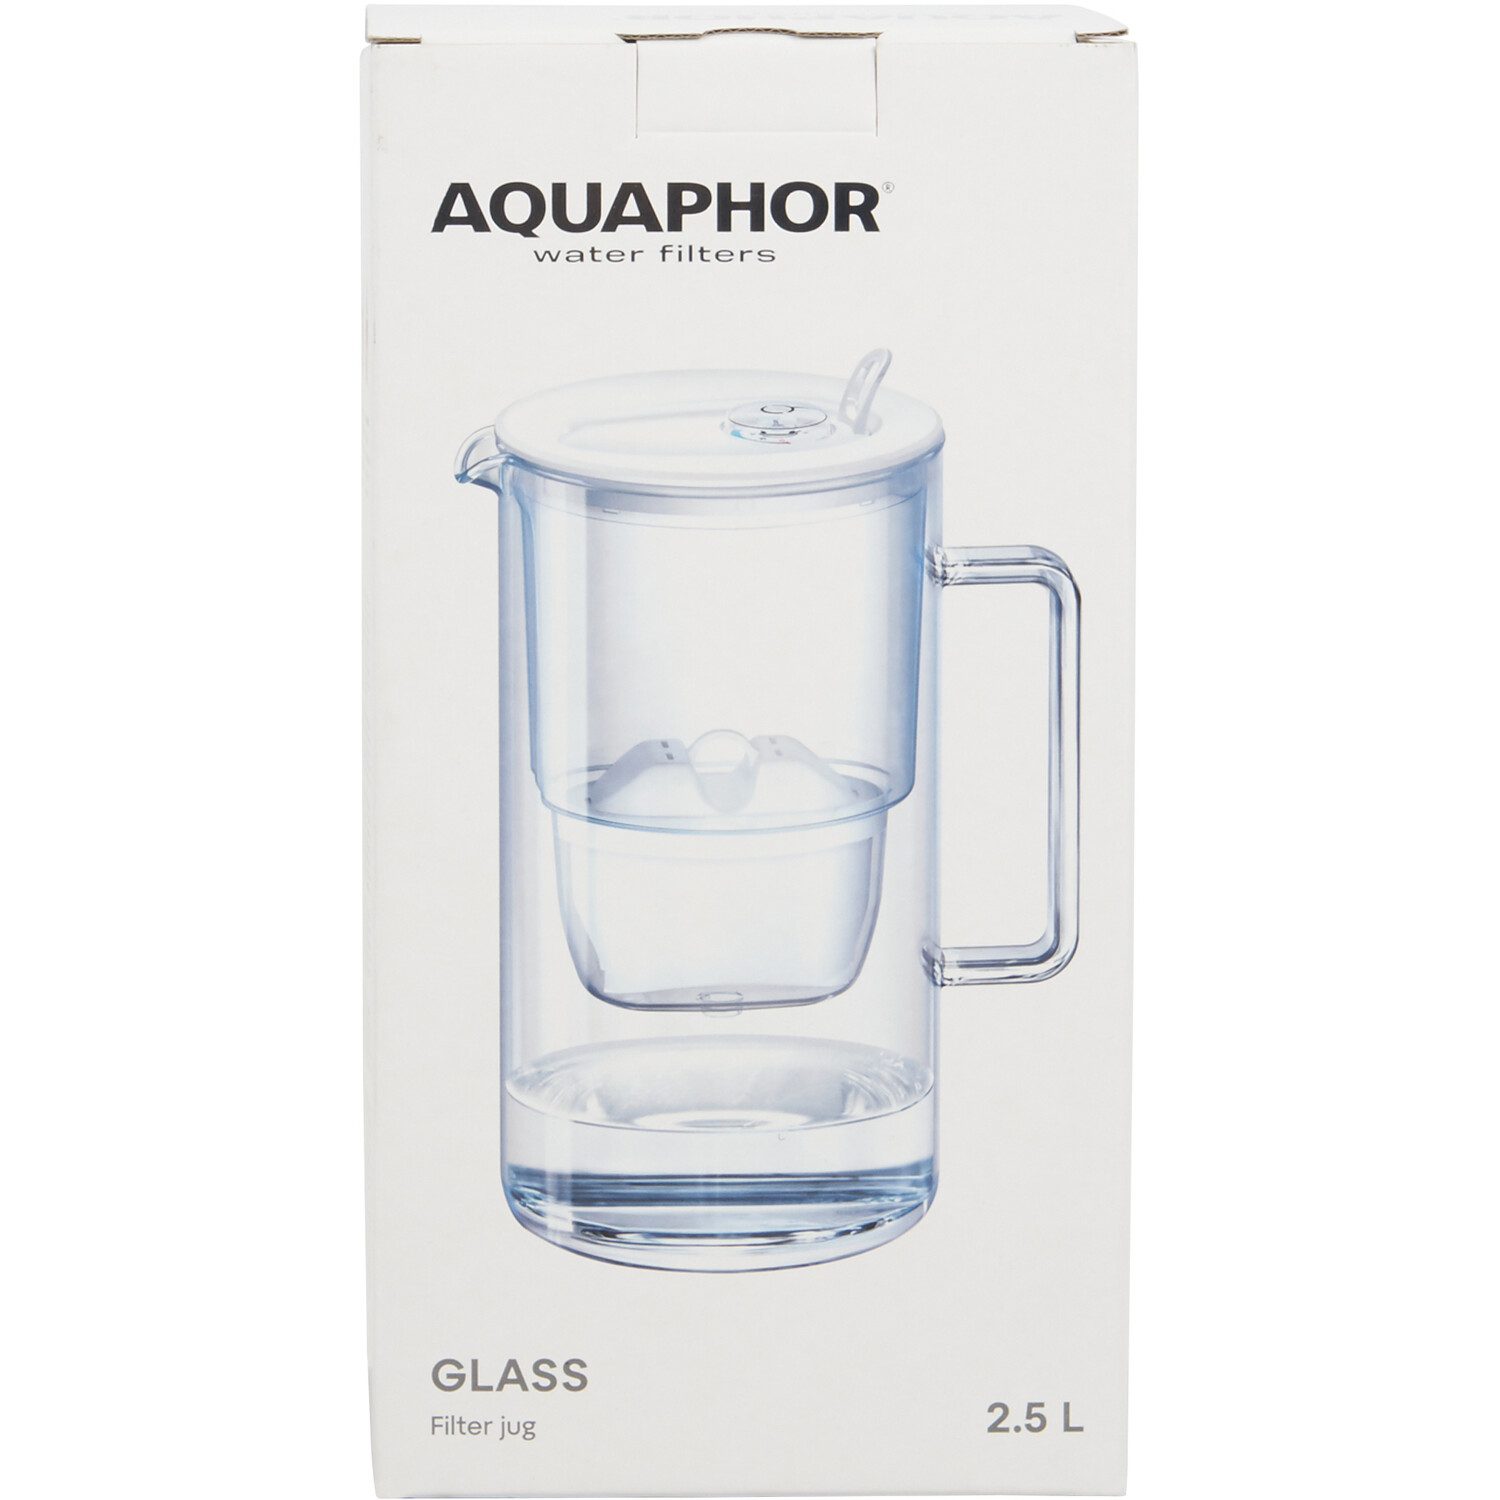 Aquaphor Glass 2.5l Water Filter Jug - White Image 1